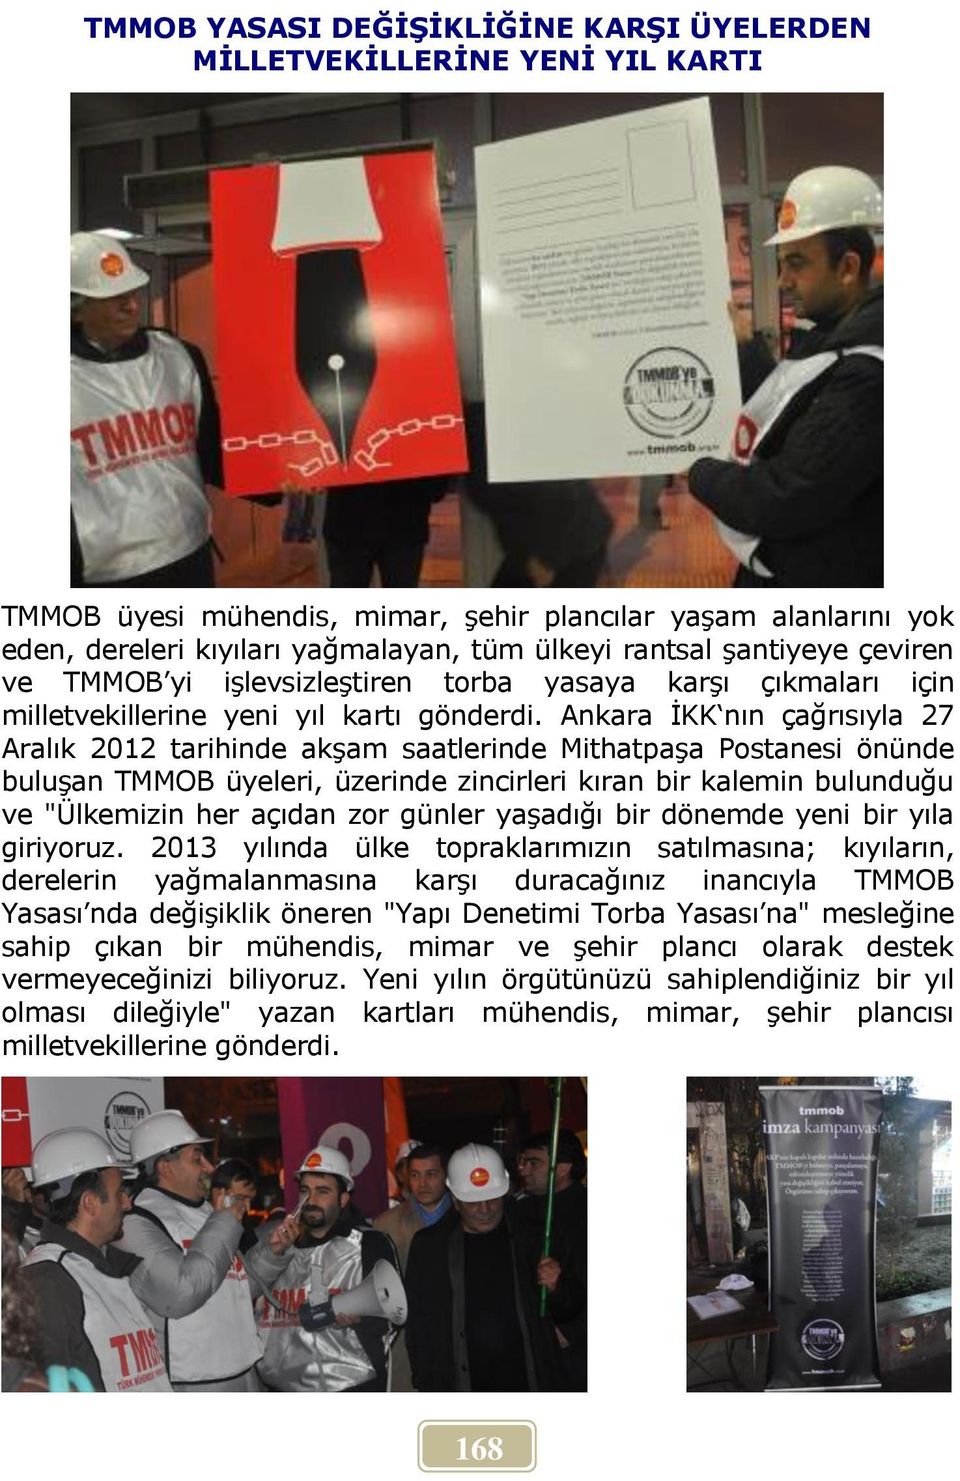 Ankara İKK nın çağrısıyla 27 Aralık 2012 tarihinde akşam saatlerinde Mithatpaşa Postanesi önünde buluşan TMMOB üyeleri, üzerinde zincirleri kıran bir kalemin bulunduğu ve "Ülkemizin her açıdan zor